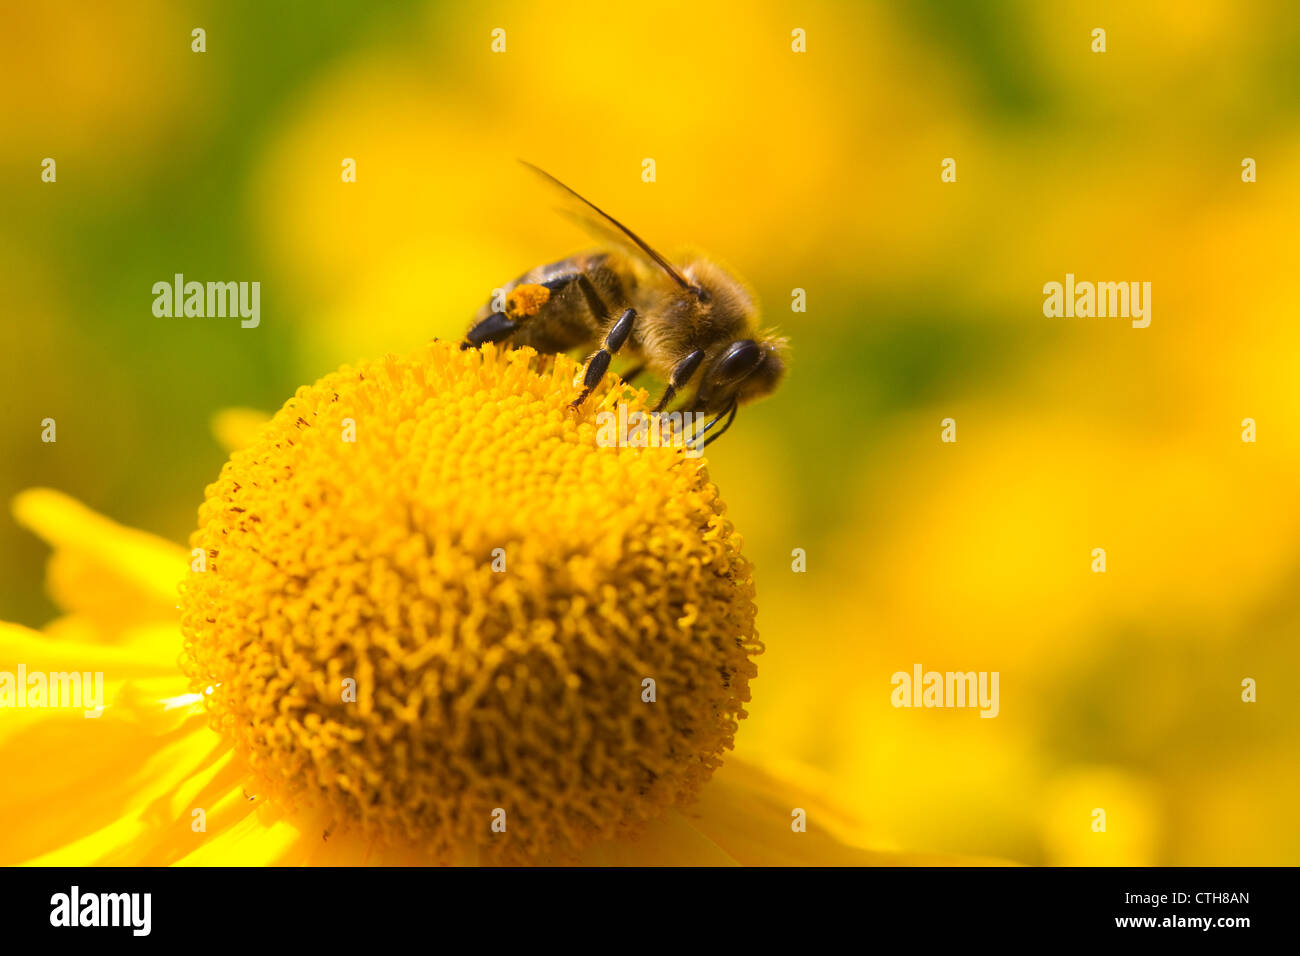 Il miele delle api (Apis mellifera) raccogliendo il nettare sul fiore giallo, probabilmente il mais calendula (Crysanthemum segetum), Londra, Regno Unito, estate Foto Stock